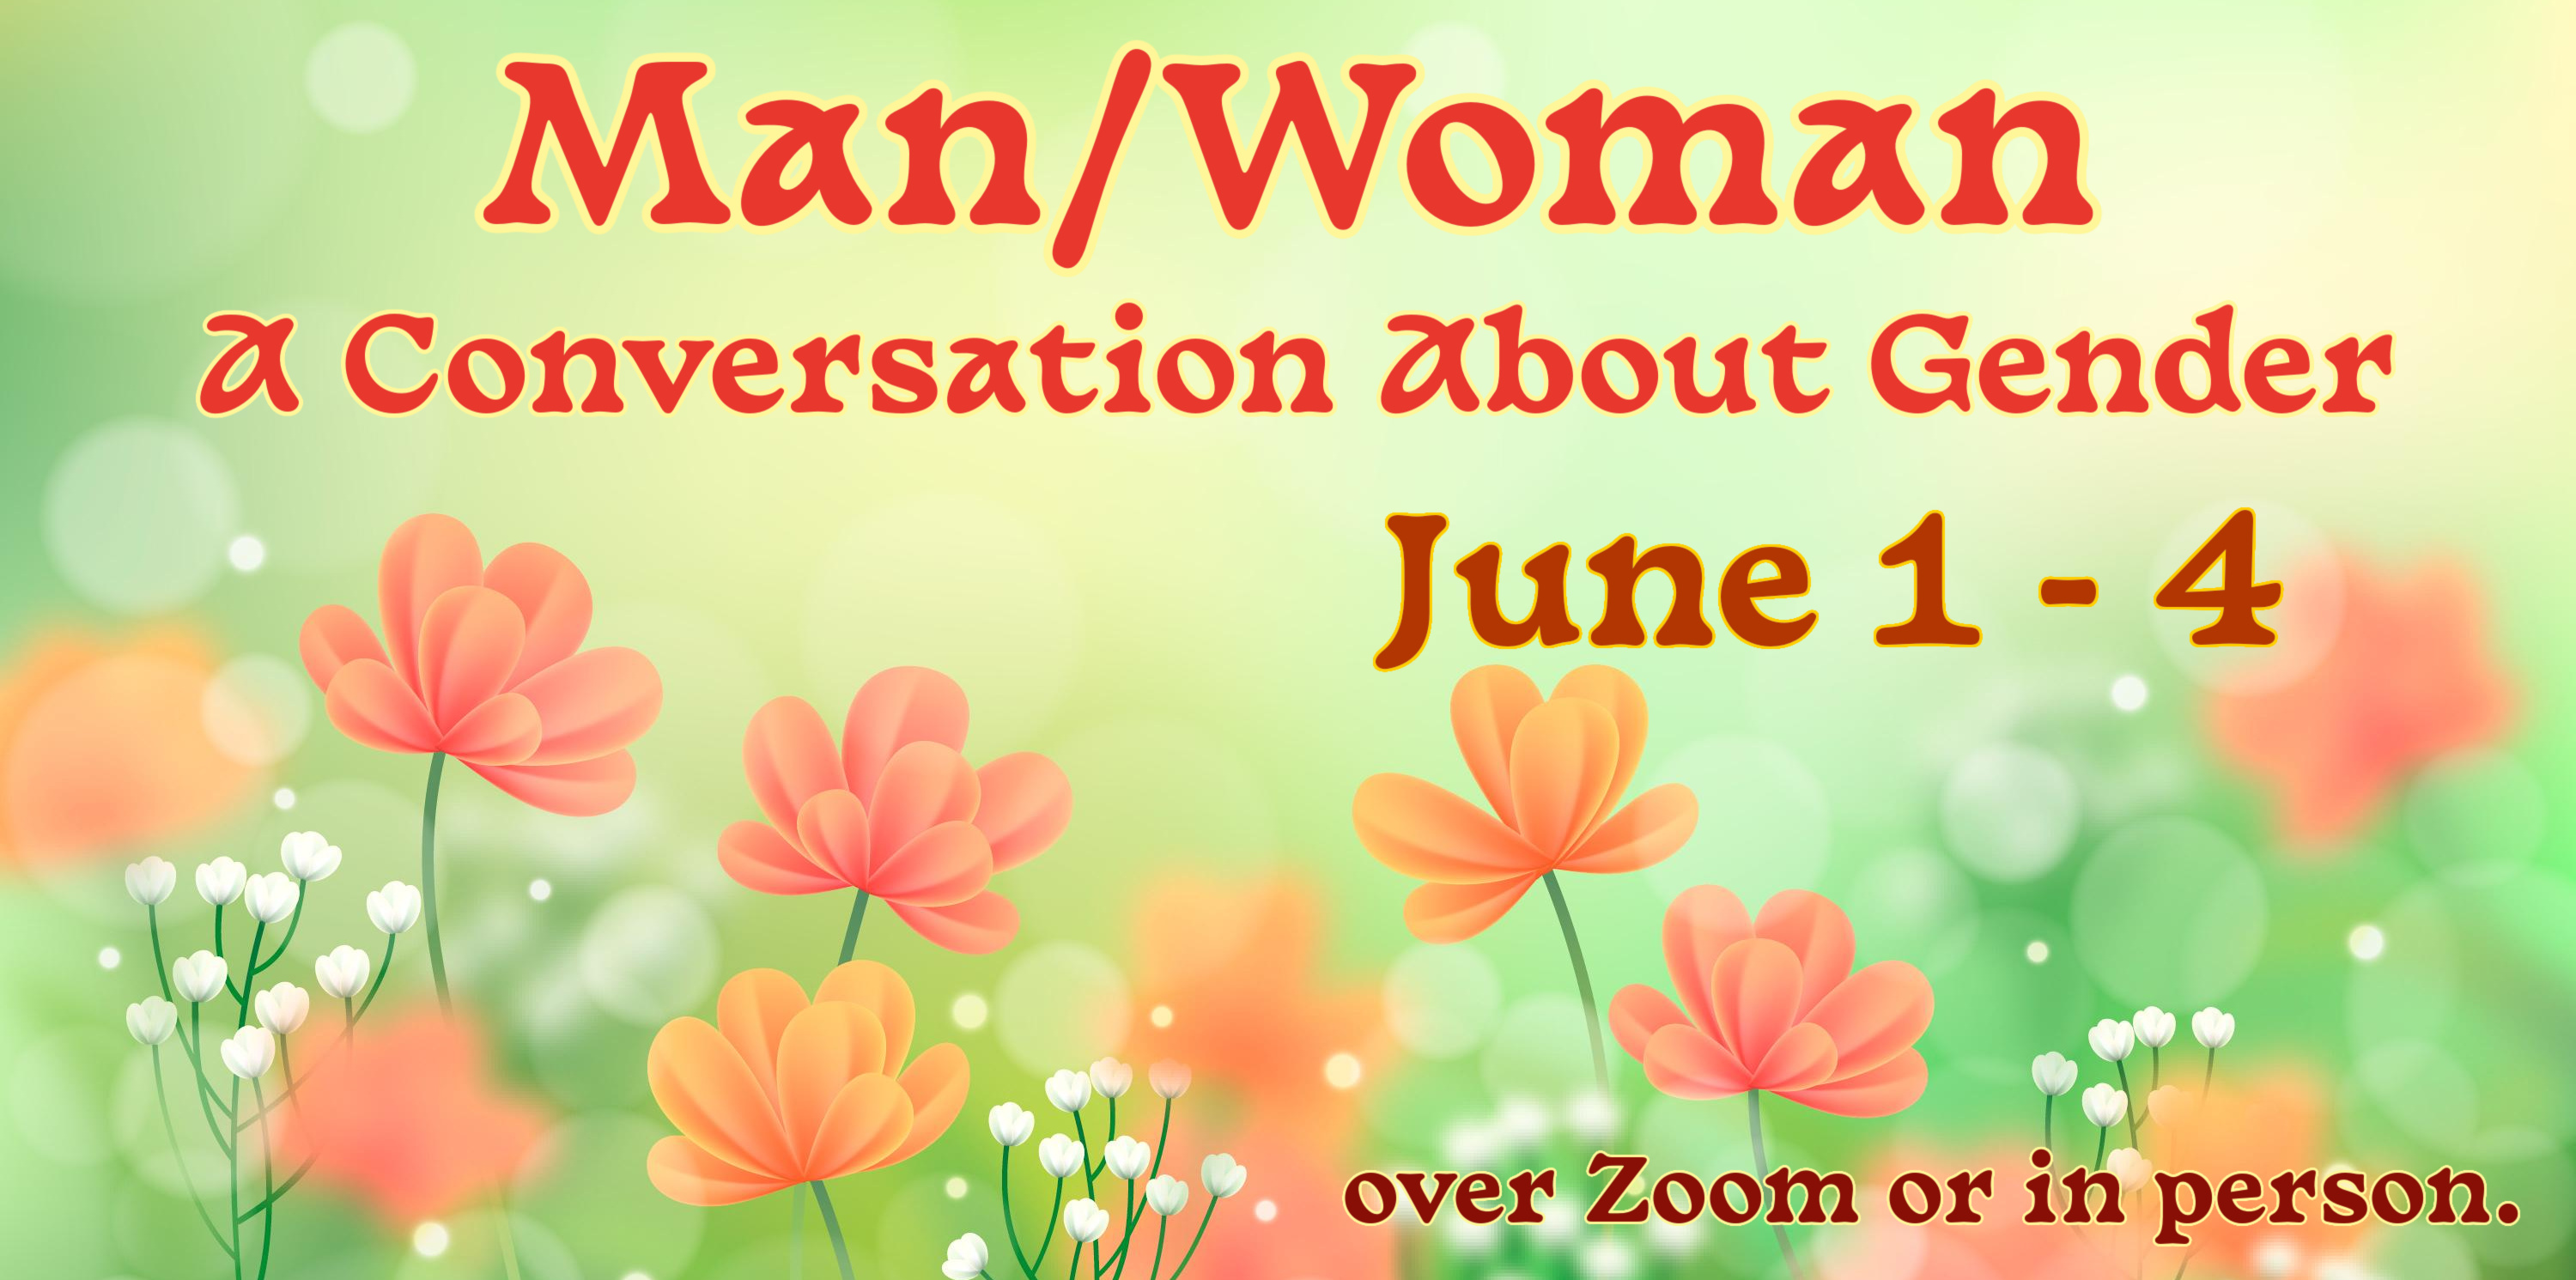 Man/Woman - A Conversation About Gender description